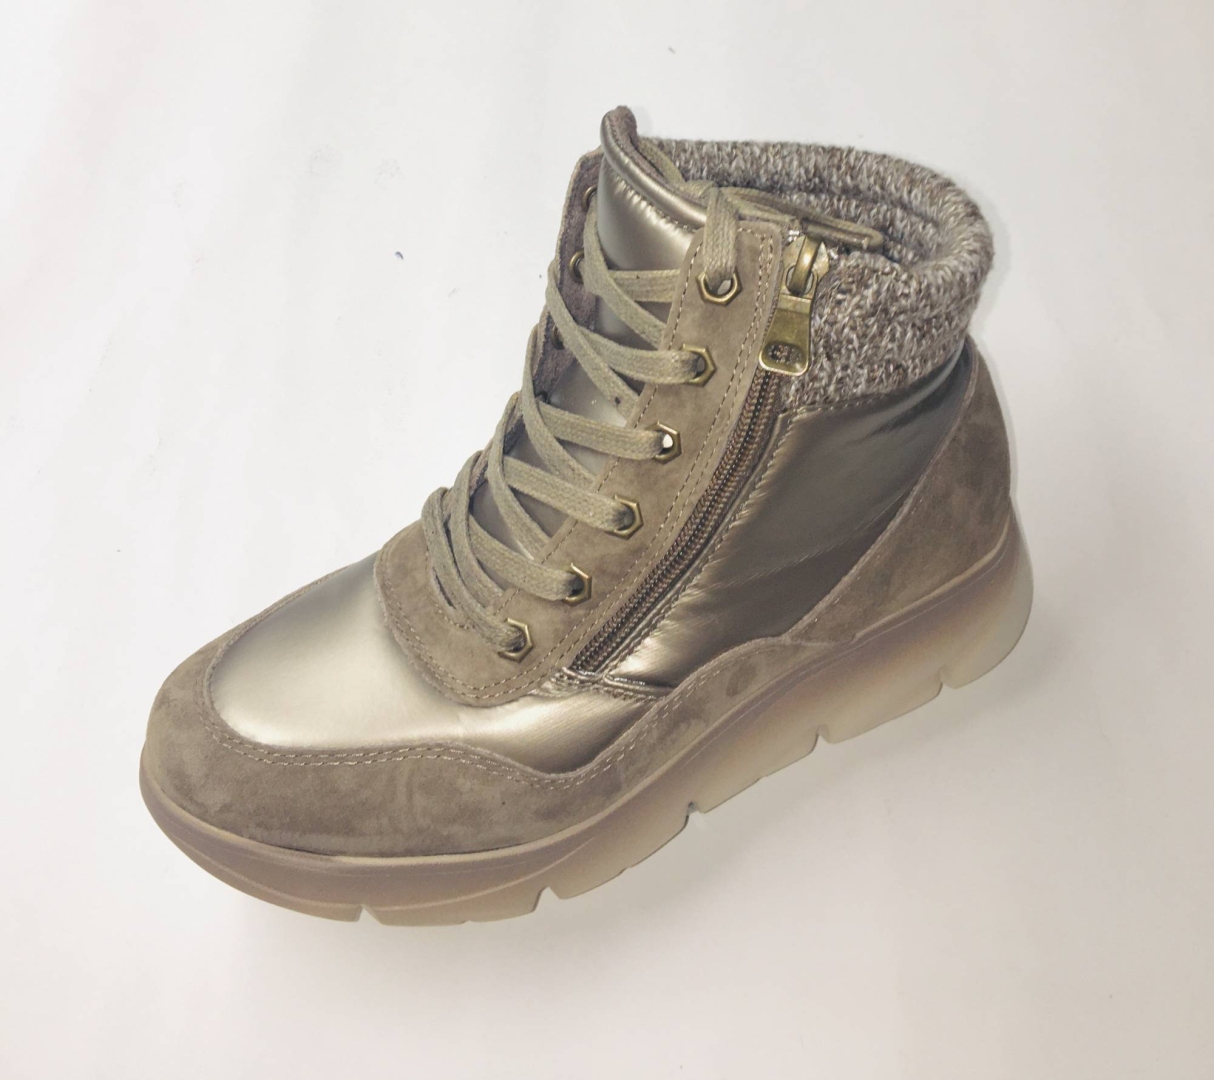 Zapato abotinado para mujer en textil beige metalizado de Khloe Marín 3727. M-143